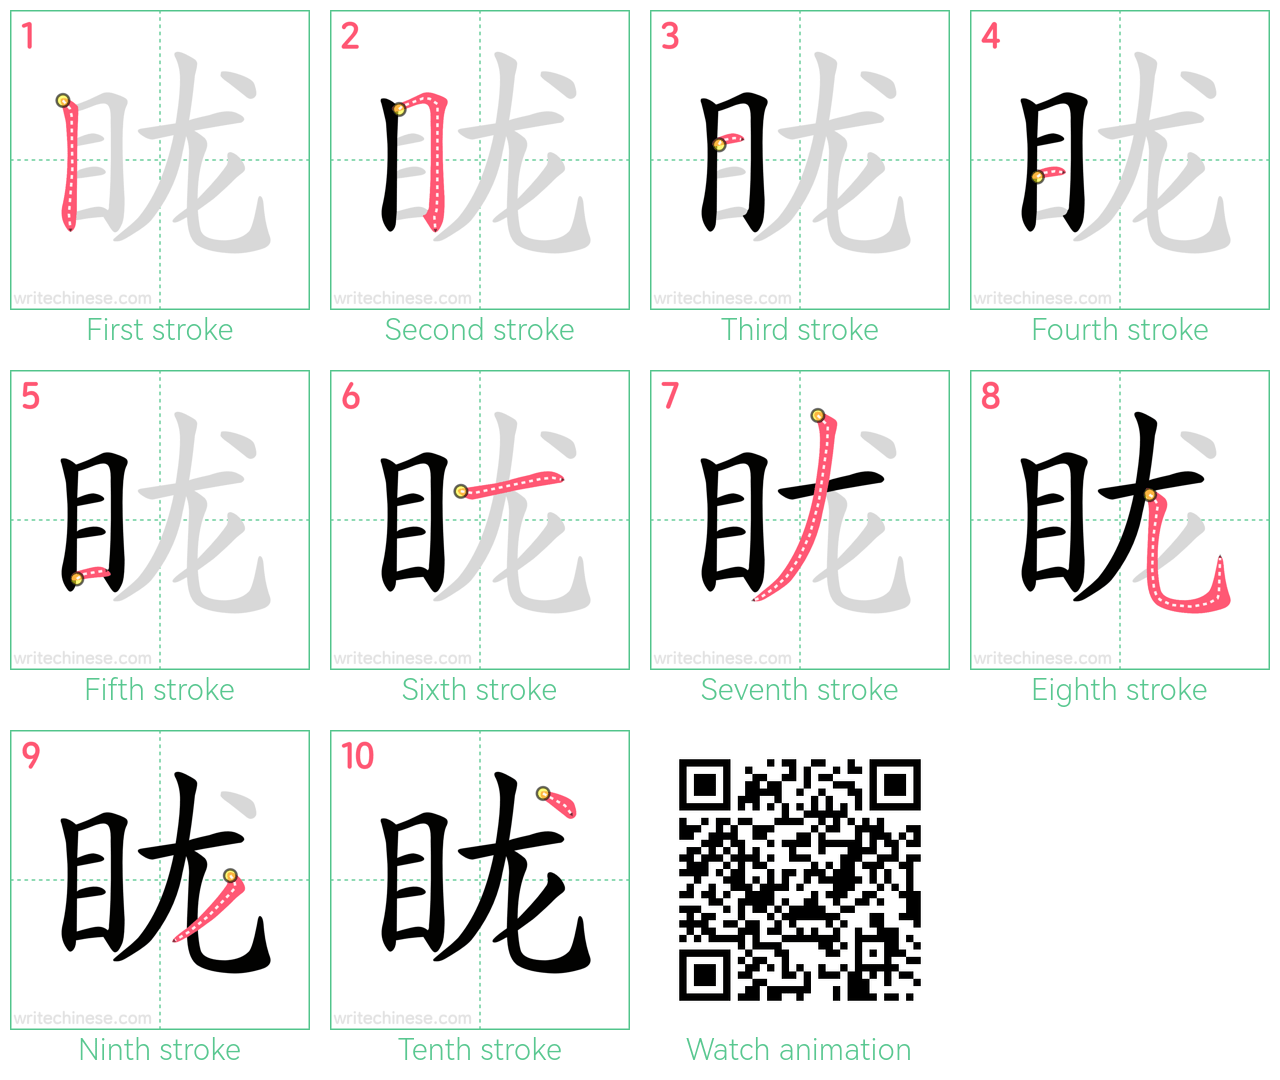 眬 step-by-step stroke order diagrams